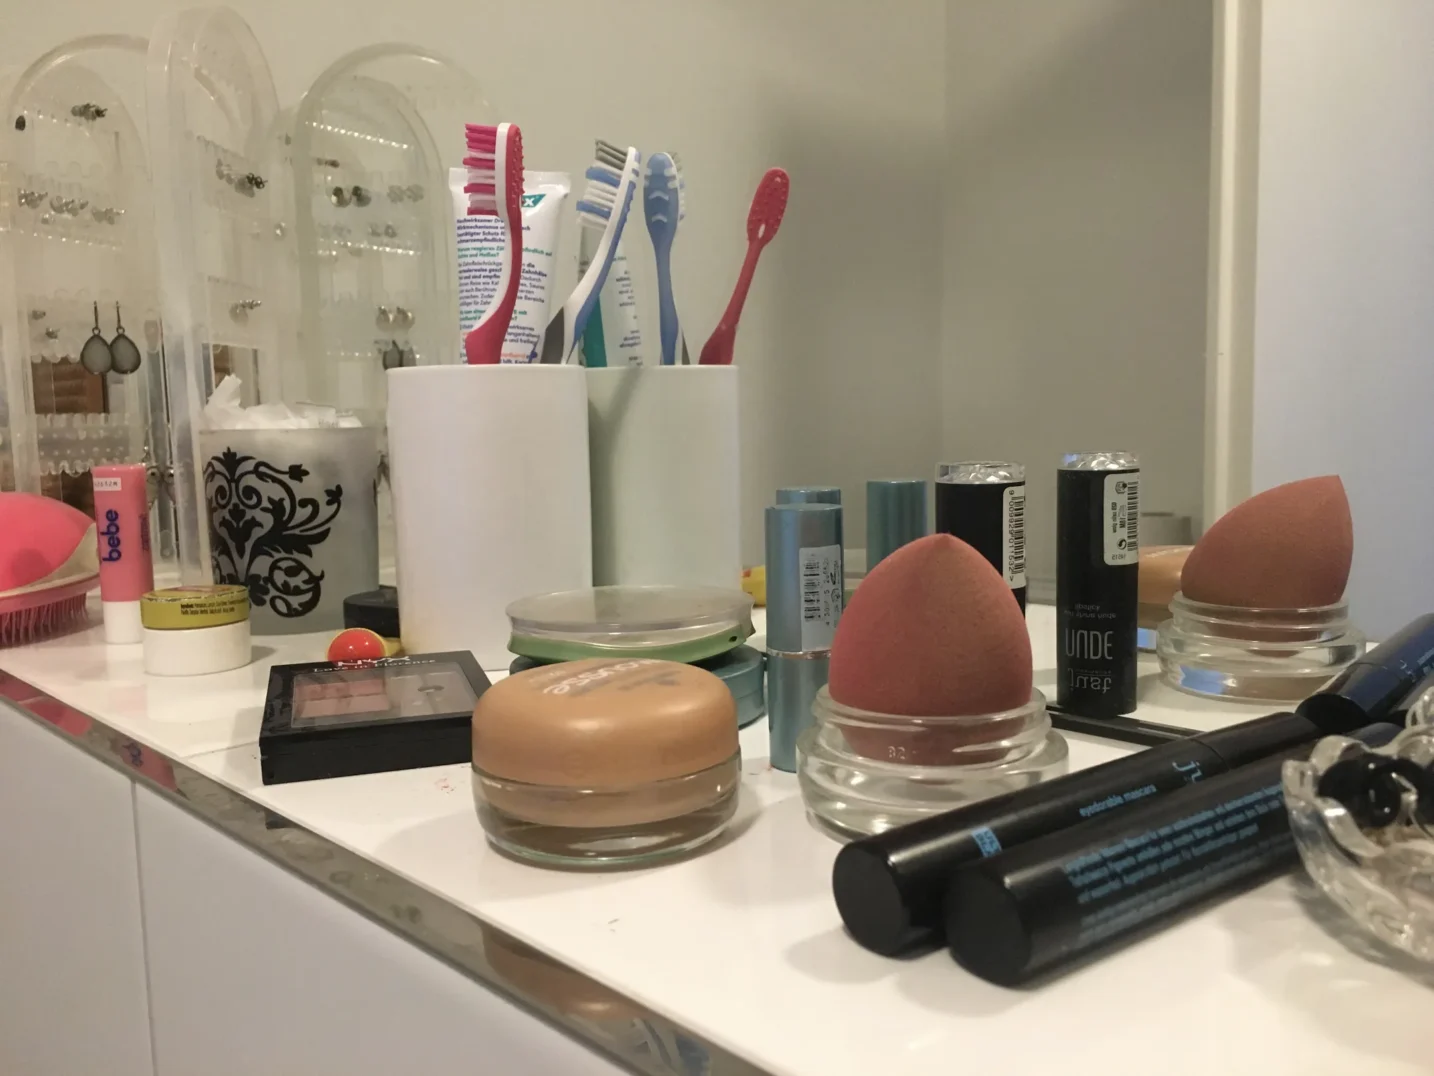 Ein Einblick in mein Badezimmer bevor ich Zero Waste in meinem Leben umgesetzt habe. Es stehen konventionelles Make up, Zahnbürsten und Zahnpasta vor einem Spiegel.